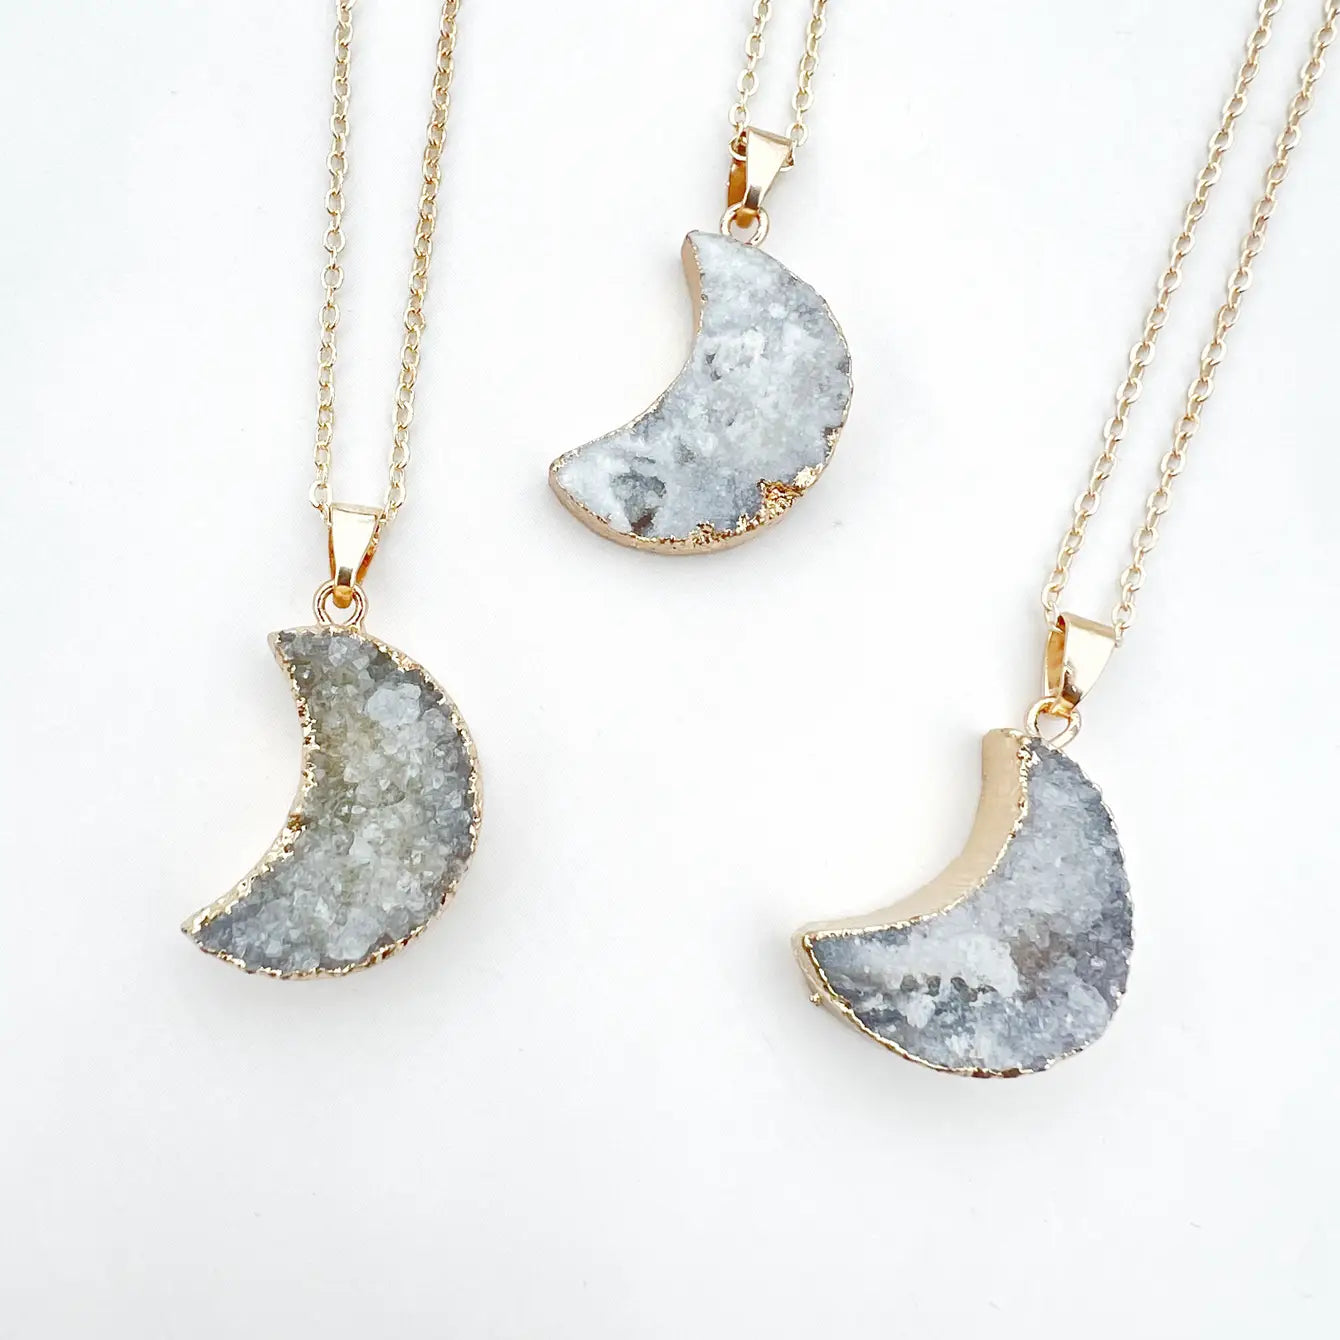 Druzy Agate Crescent Moon Necklace - 4 Pcs